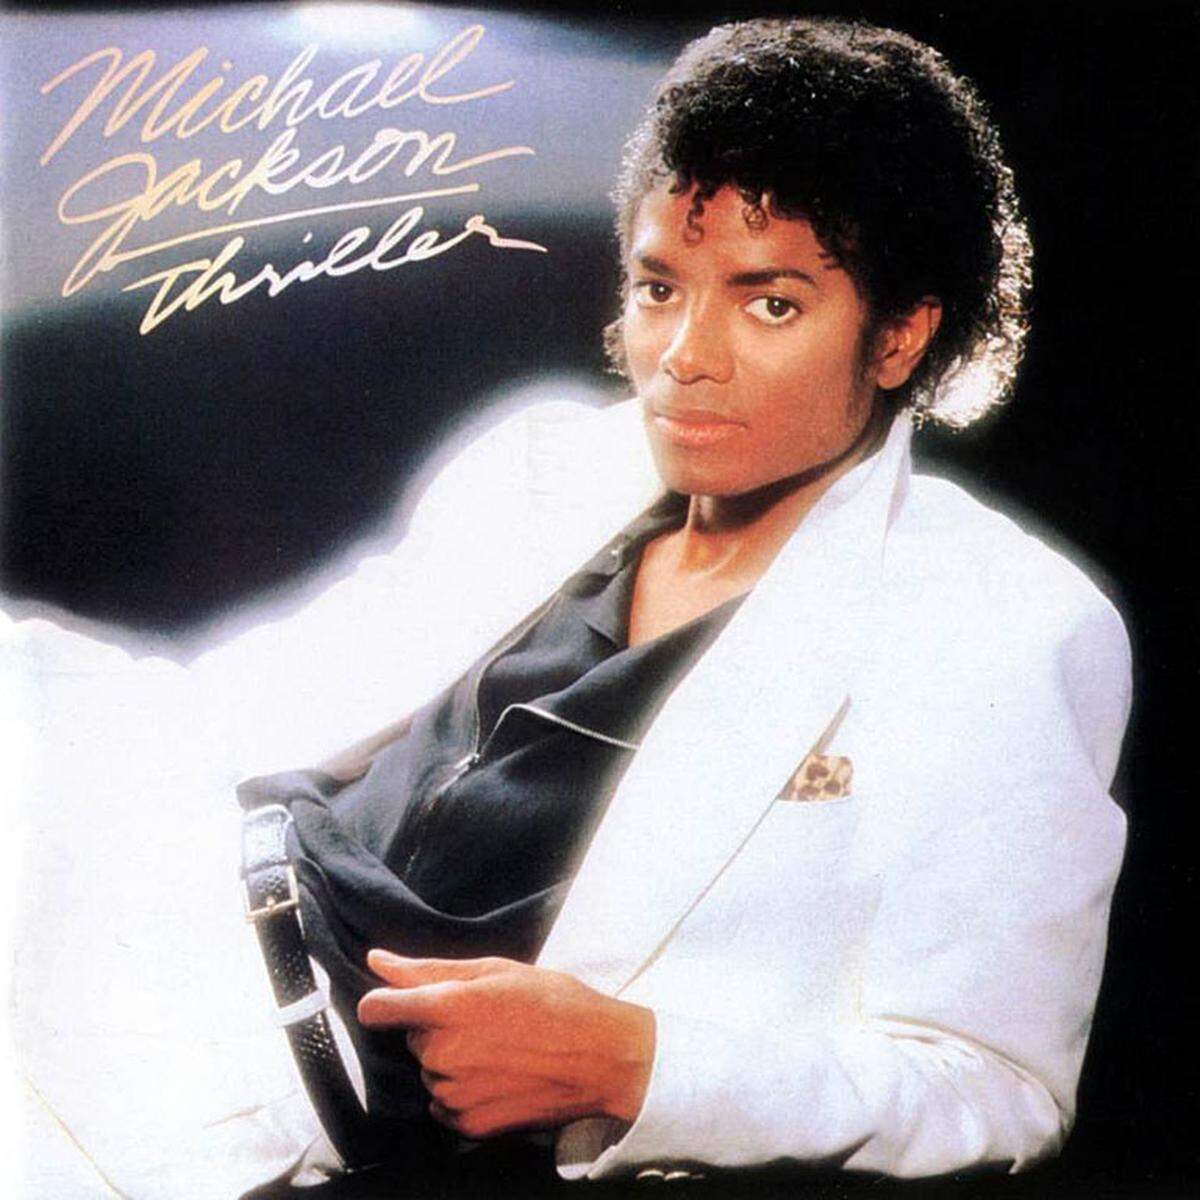 Derzeit werden Justin Timberlake und Pharrell Williams gefeiert. Ohne Michael Jackson würden sie ganz anders klingen. Das von Quincy Jones produzierte Album "Thriller" (1982) war das beste Album des "King of Pop".